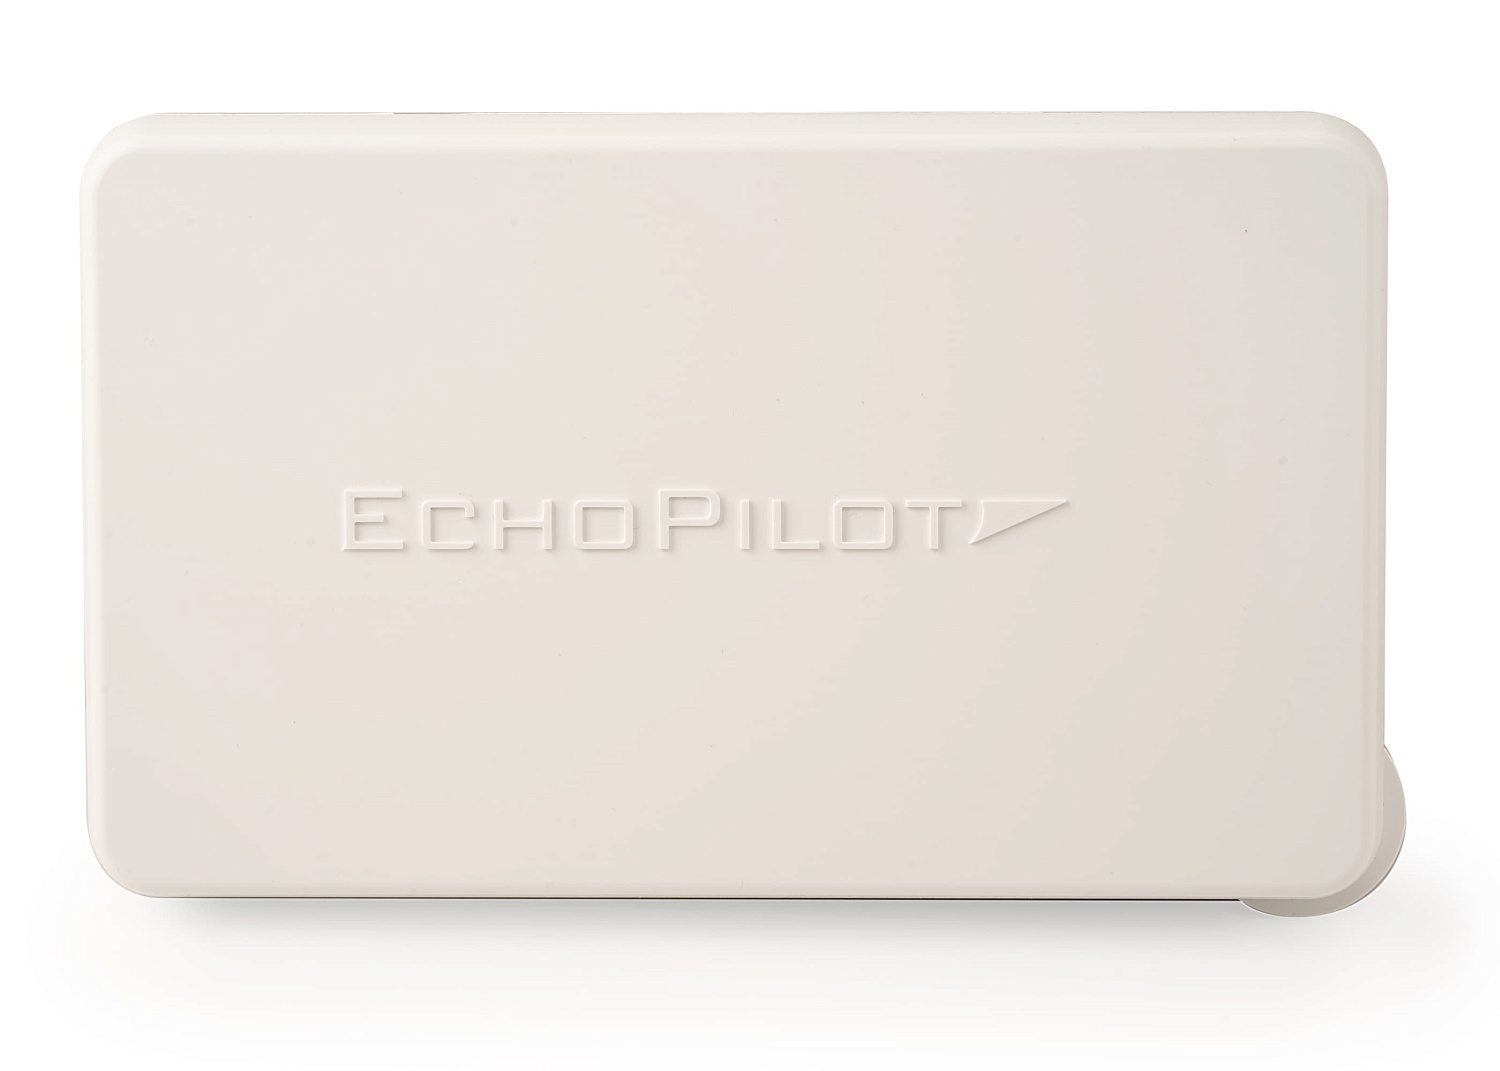 ECHOPILOT ECHOPILOT- FLS 2D with Professional Transducer